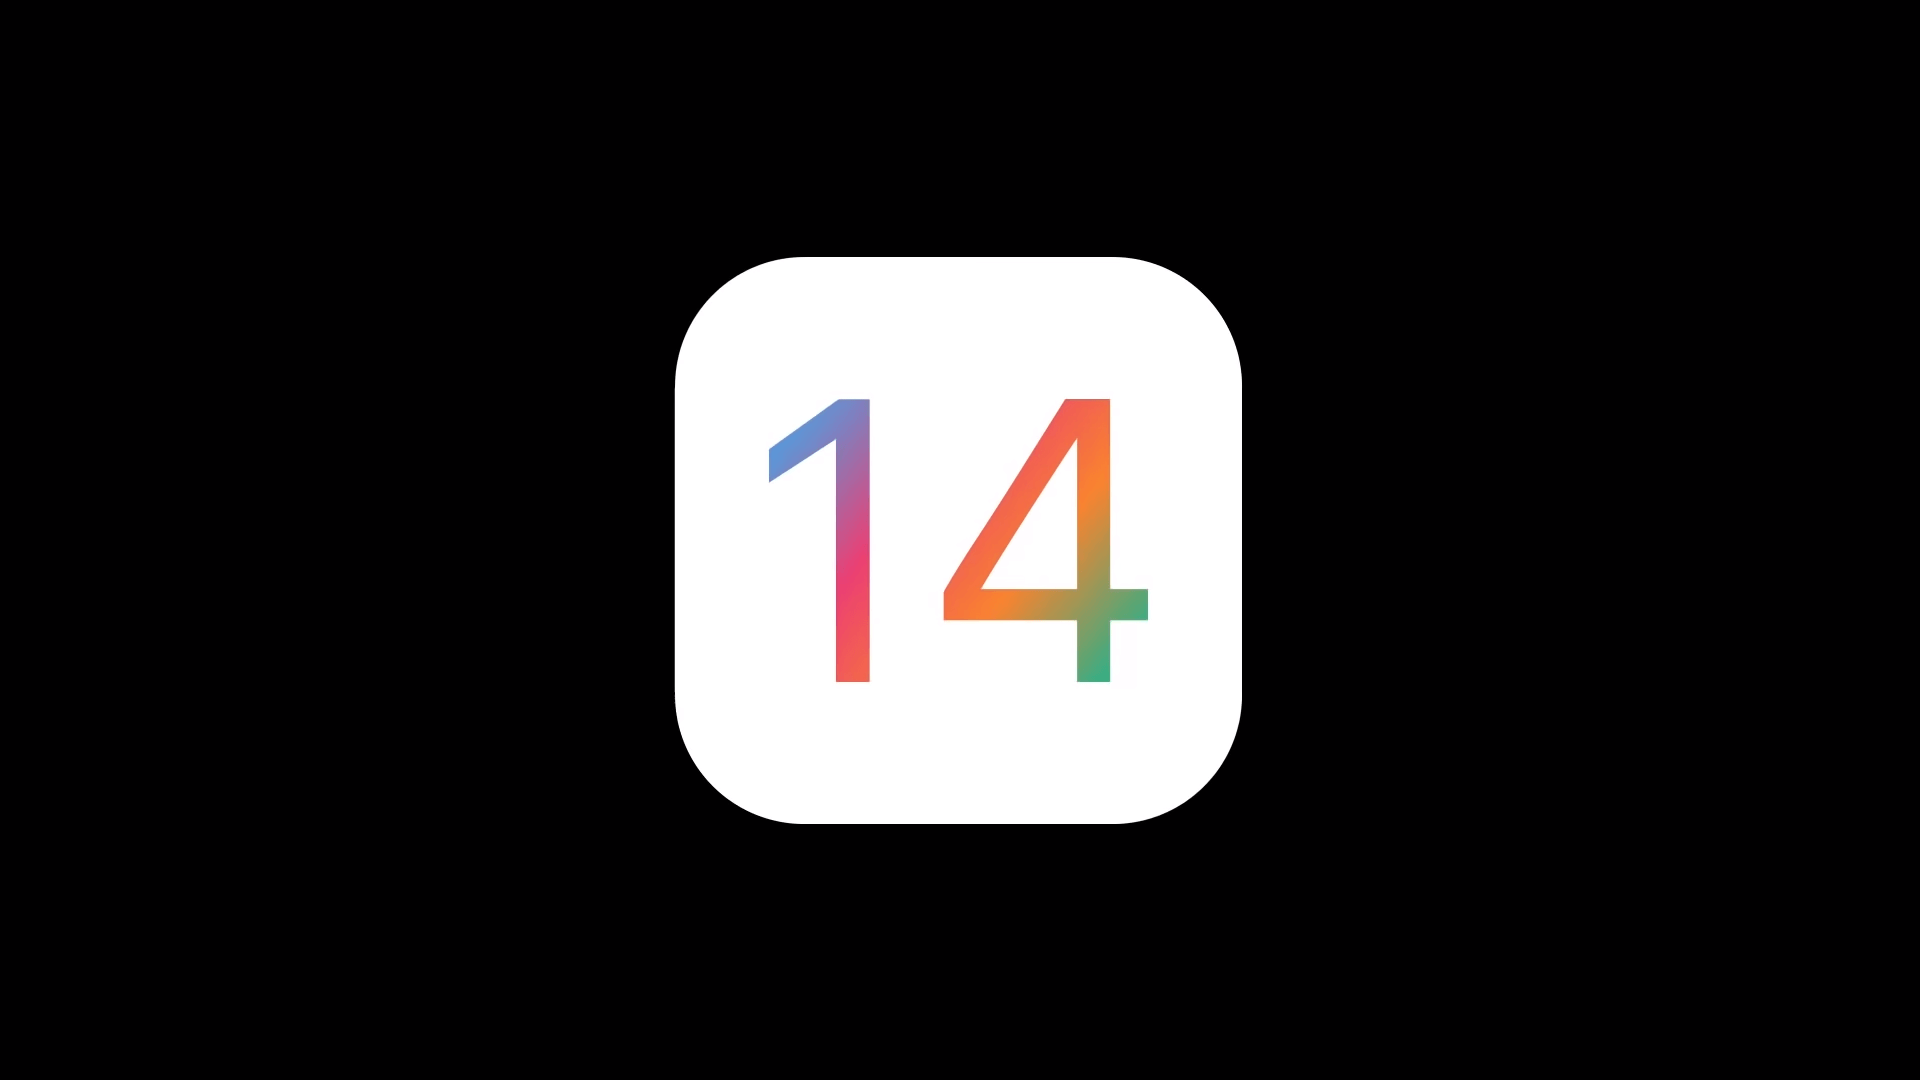 這樣的iOS 14 概念設計你喜歡嗎